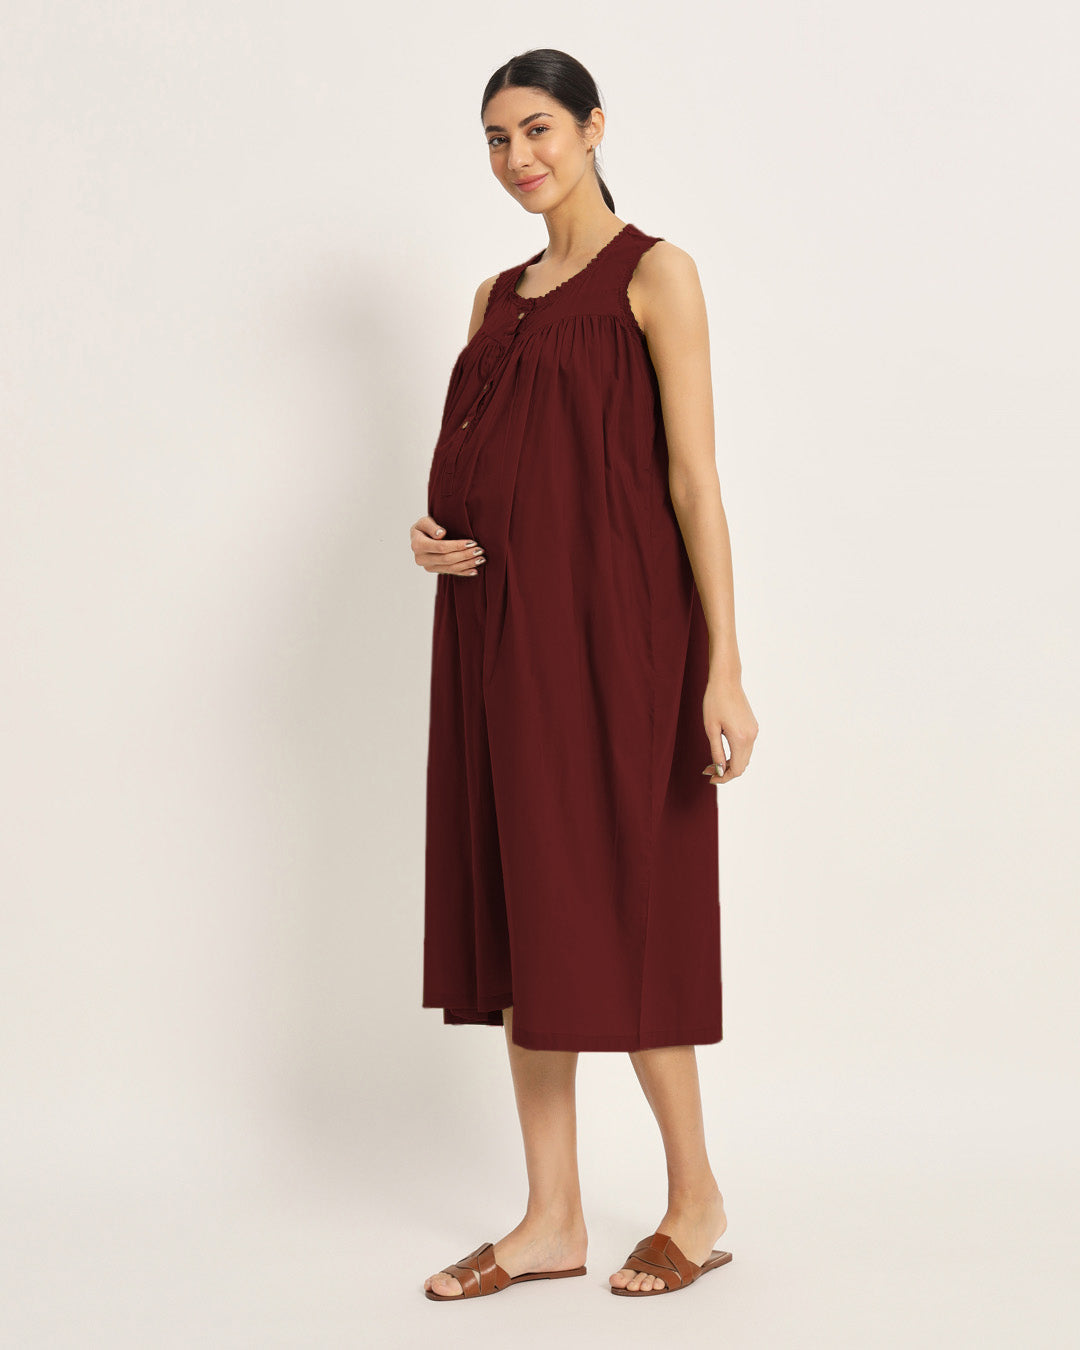 Combo: Iris Pink & Russet Red Pregnan-Queen Maternity & Nursing Dress